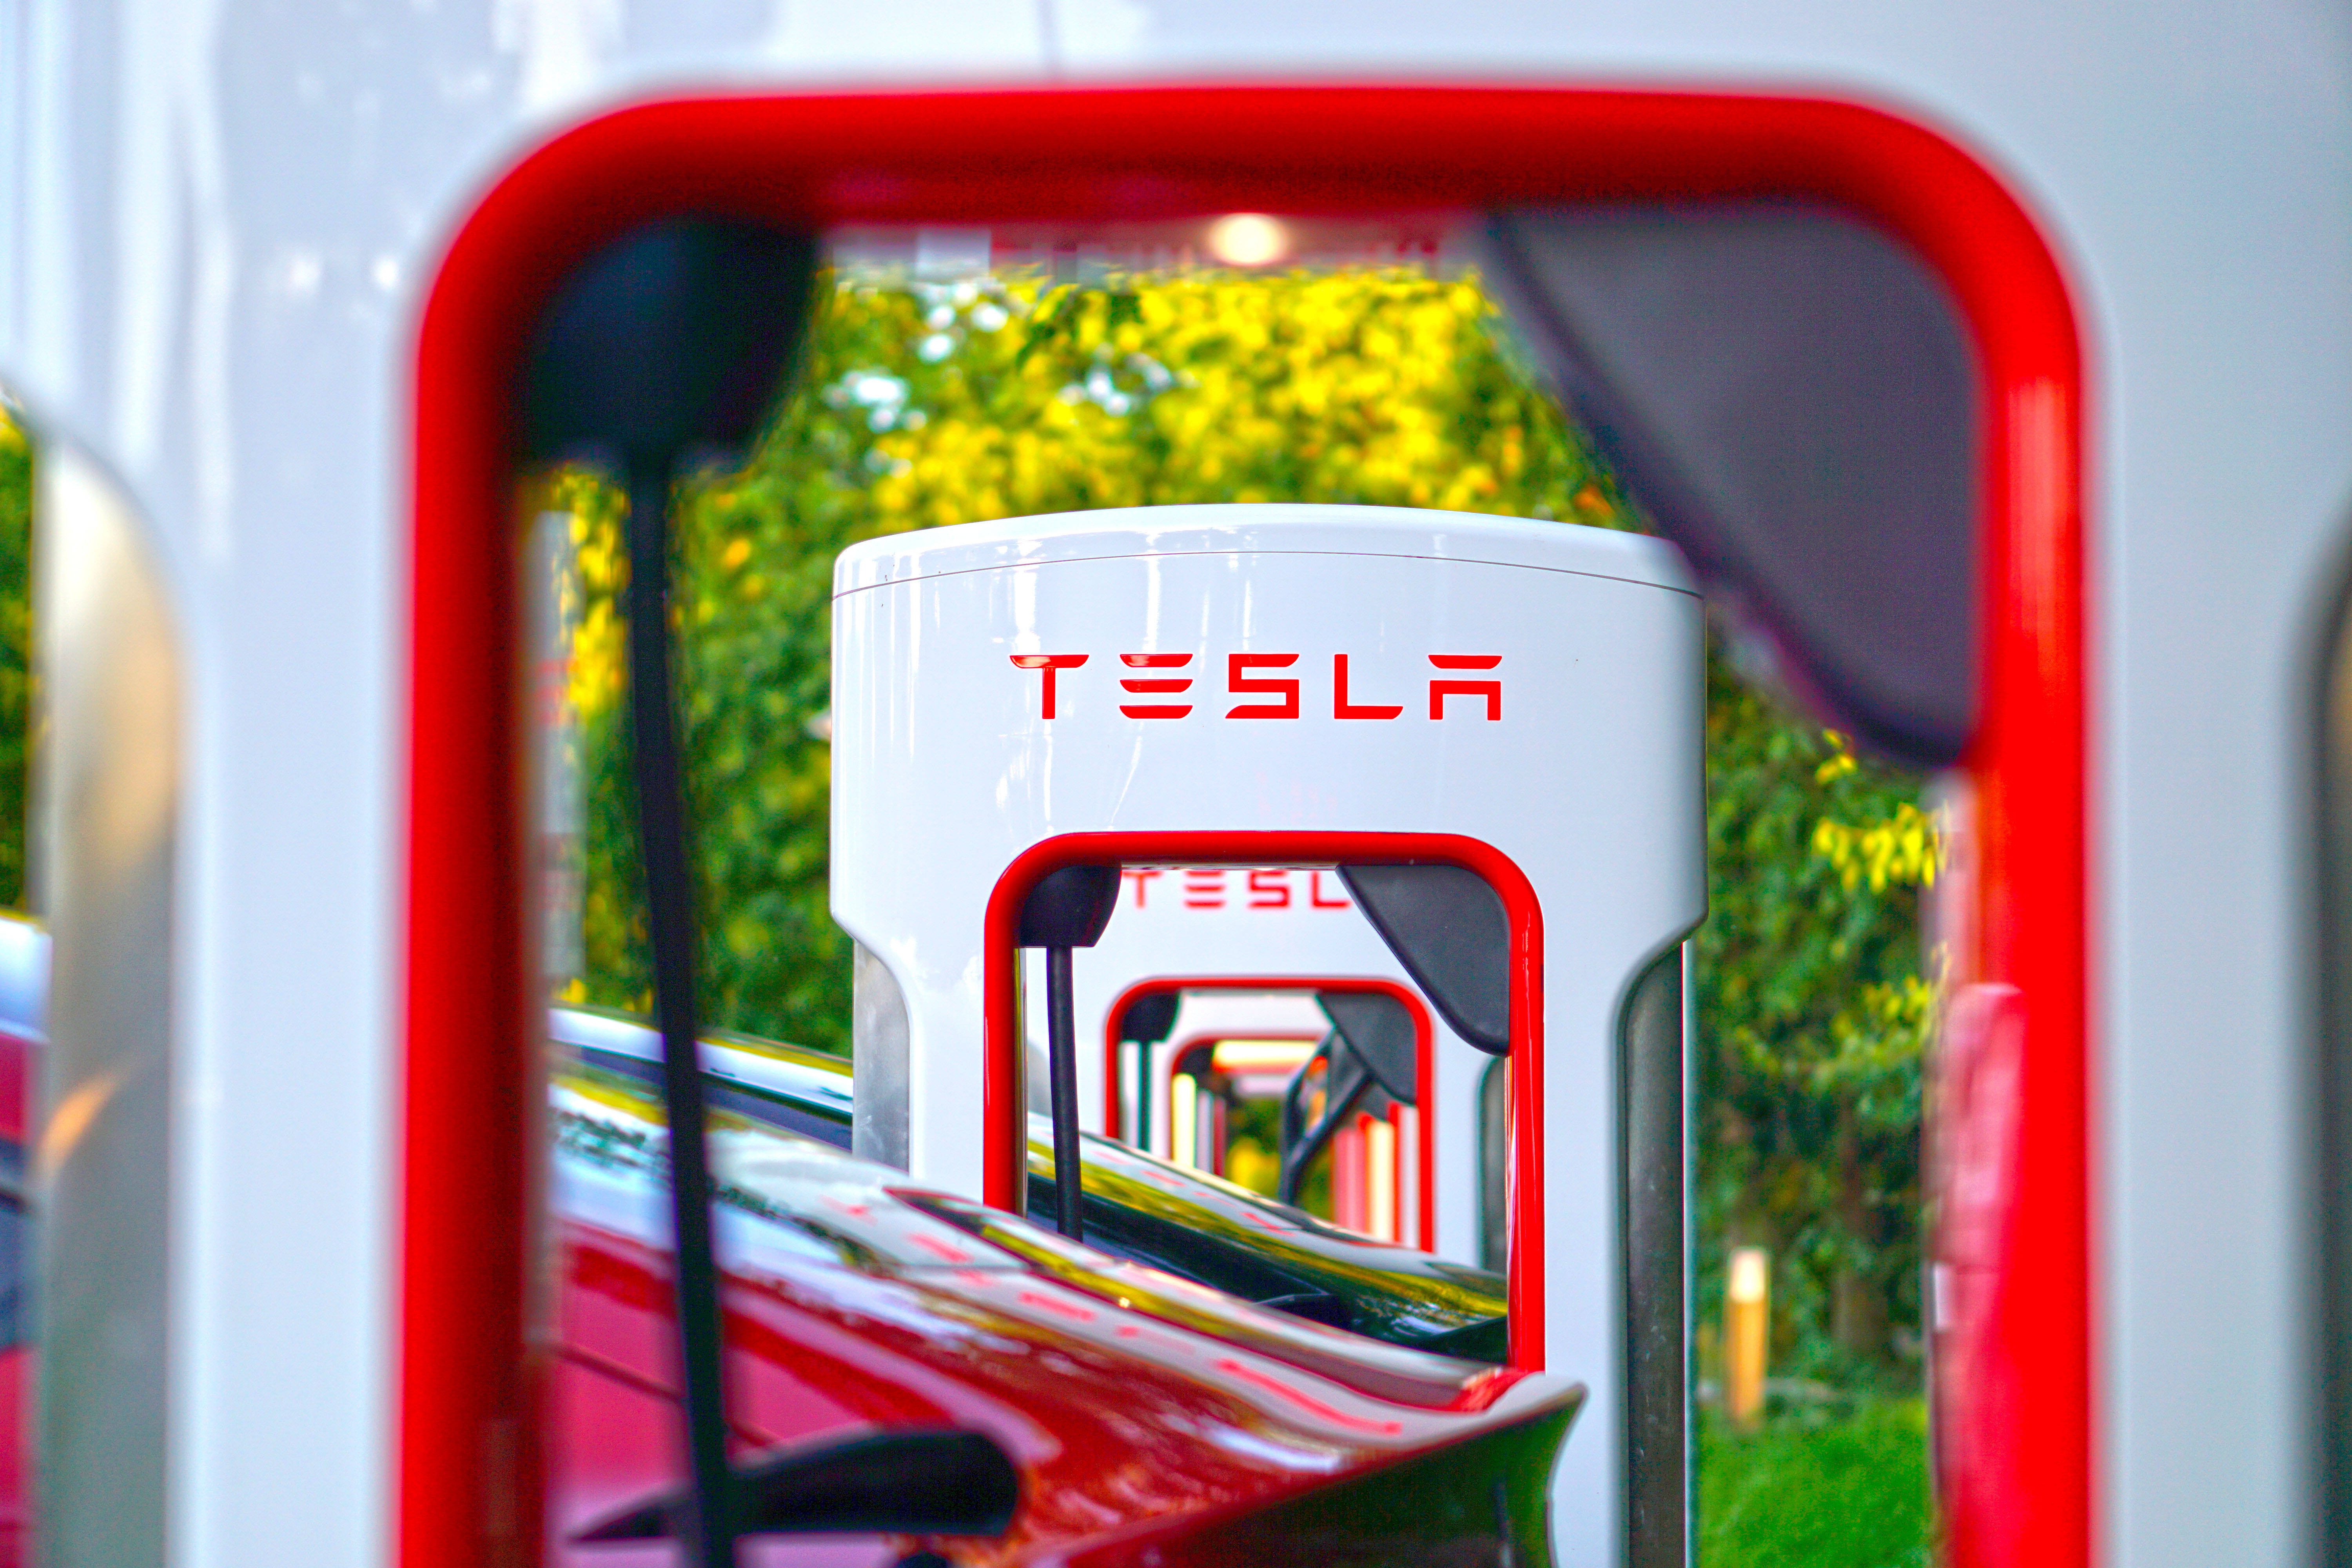 Spöttischer Sticker auf Auto: Tesla-Fahrer distanziert sich von